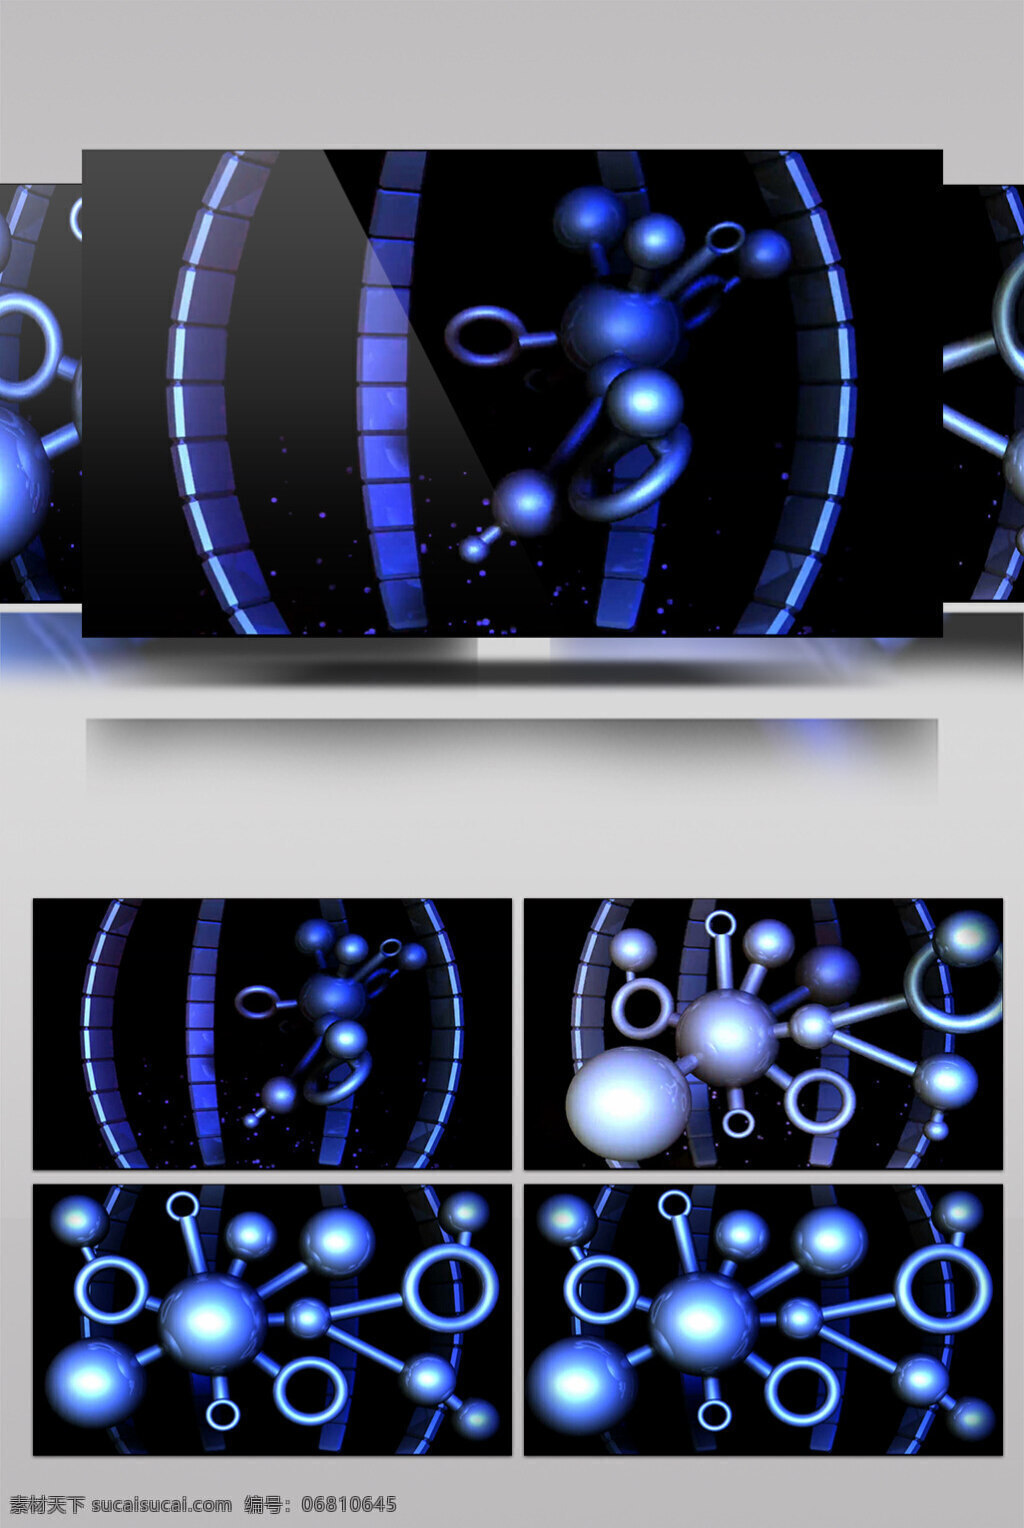 蓝色 魔法 球 动态 视频 圈圈蓝色 动态星光 华丽流转 光芒四射 3d视频素材 特效视频素材